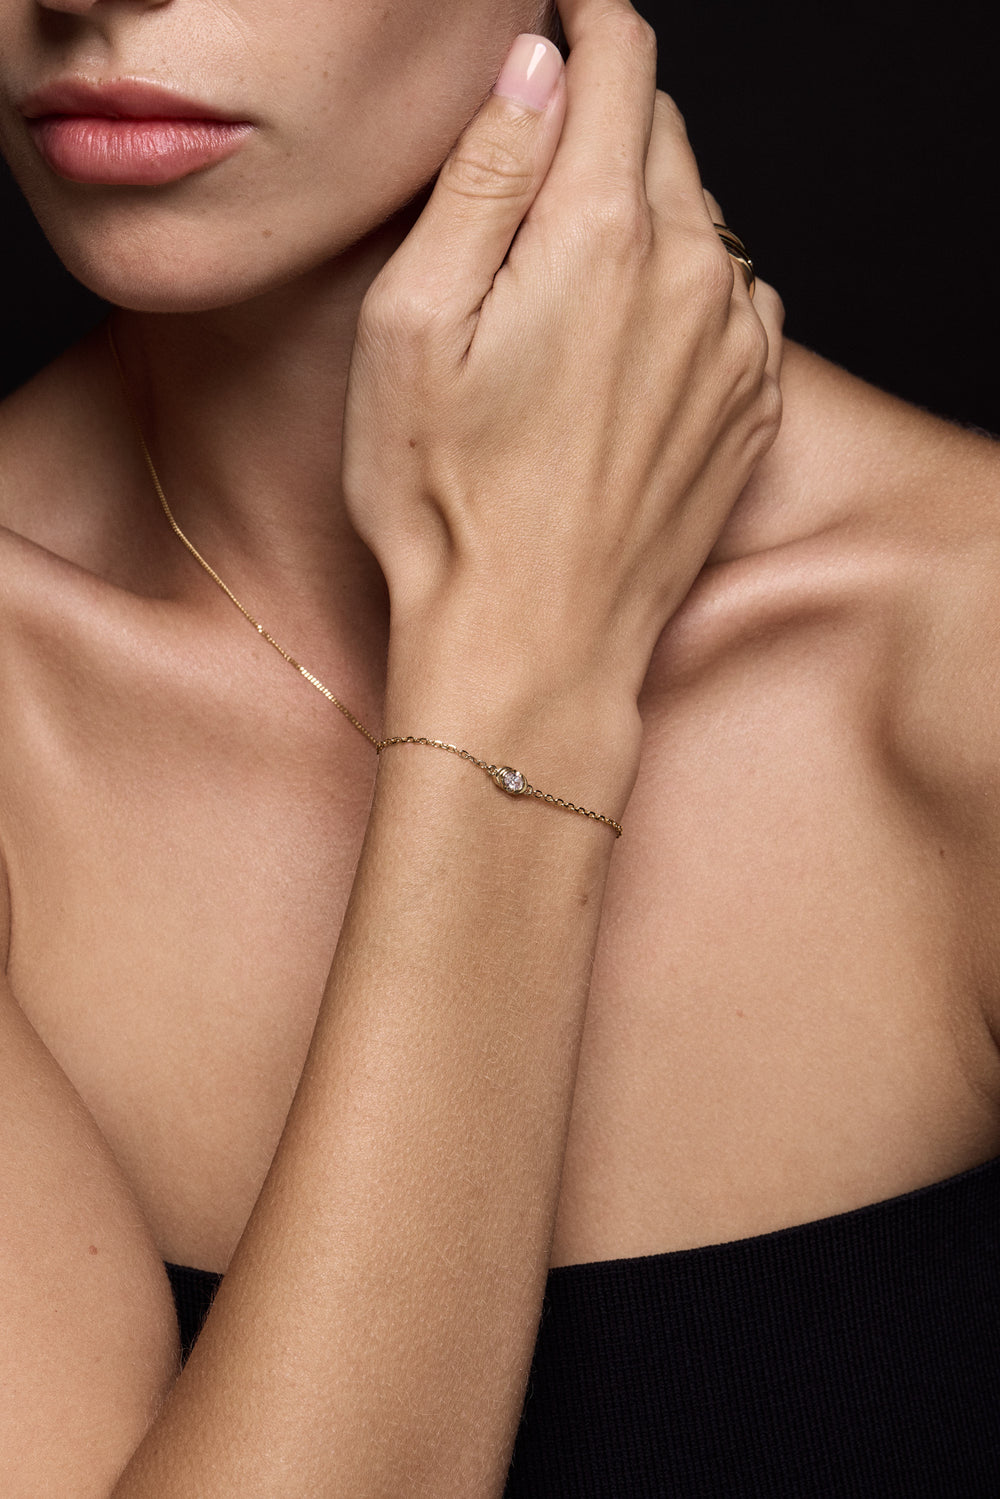 Oval Diamond Bracelet | 9K White Gold| Natasha Schweitzer